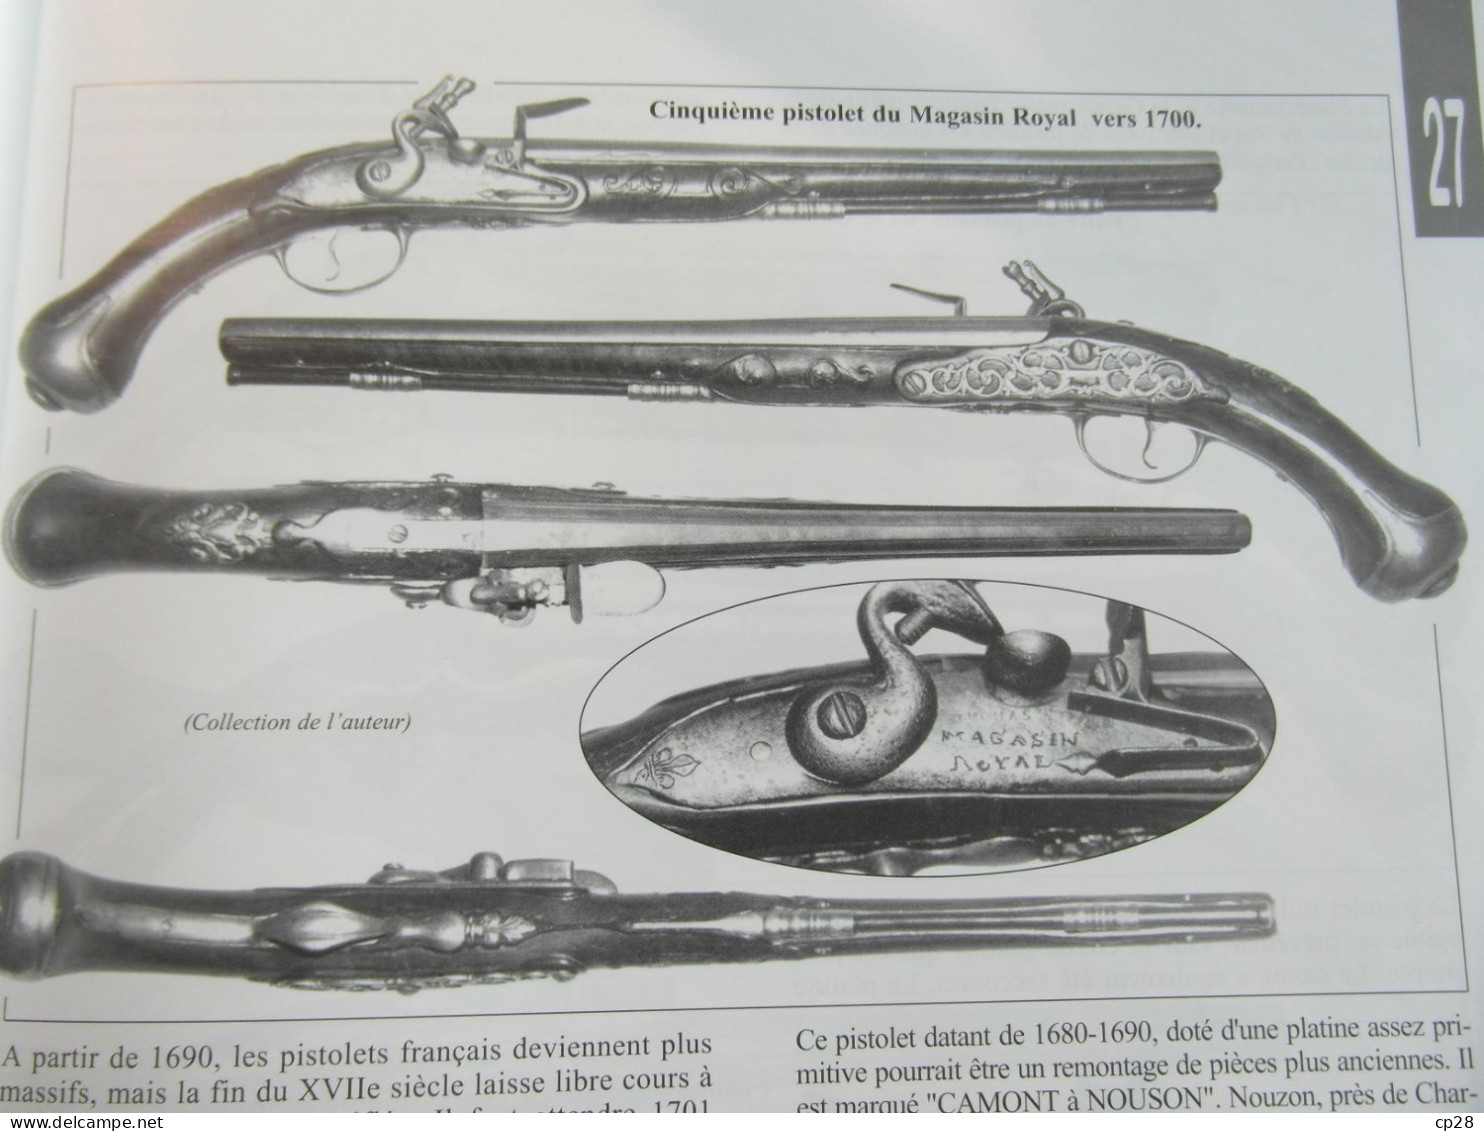 Rare pistolet préréglementaire vers 1700 provenant du magasin royal de Louis XIV